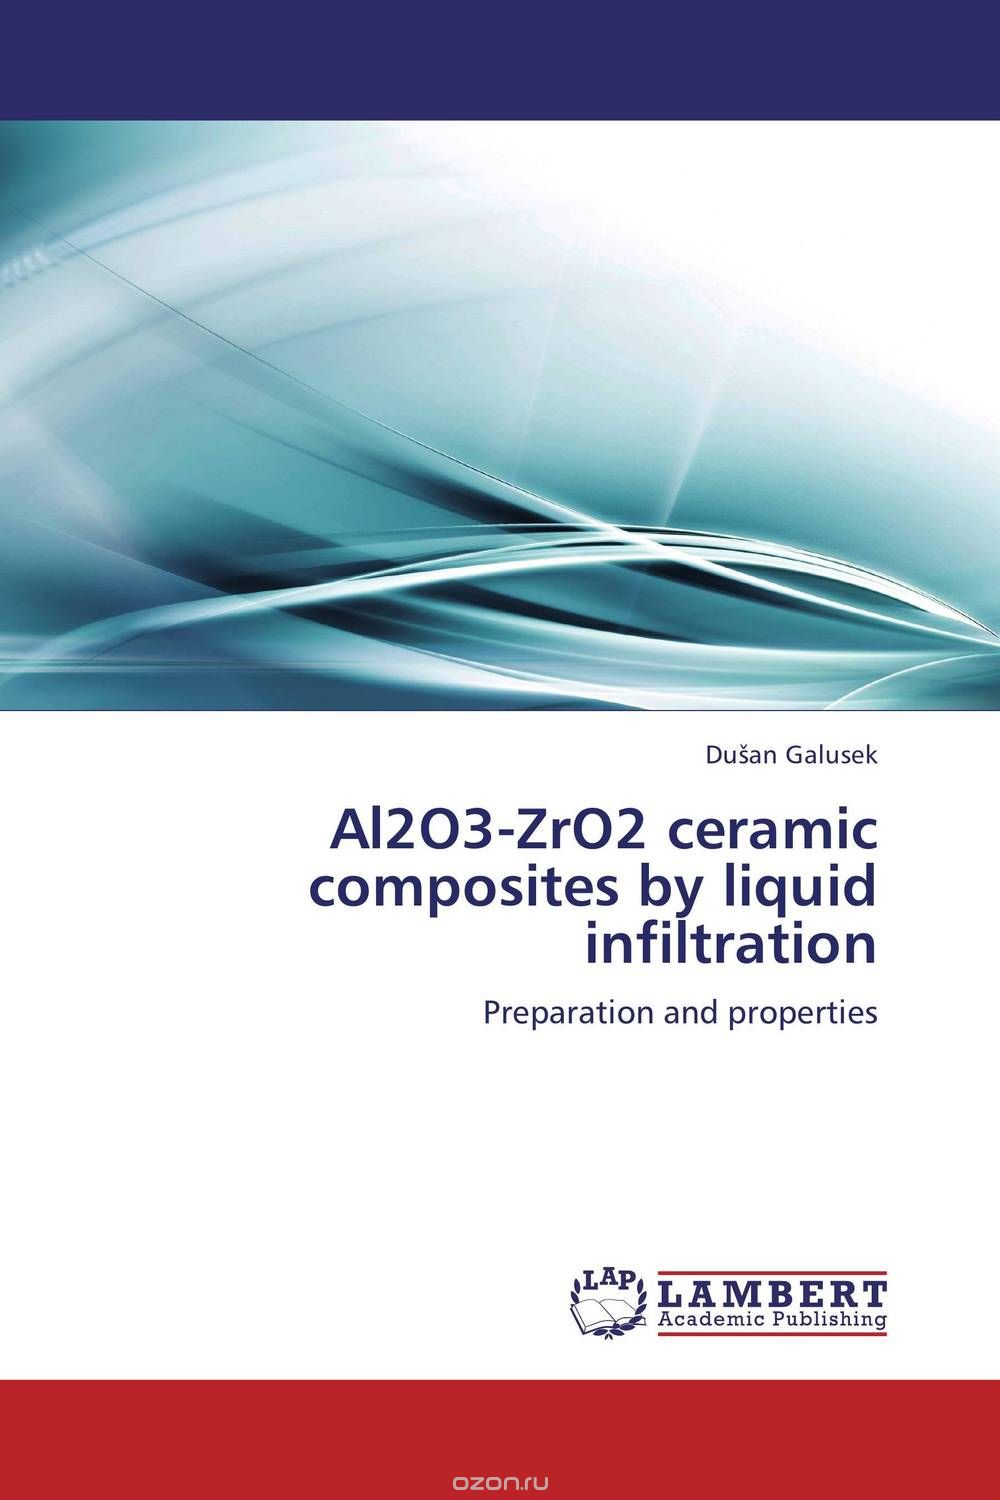 Скачать книгу "Al2O3-ZrO2 ceramic composites by liquid infiltration"